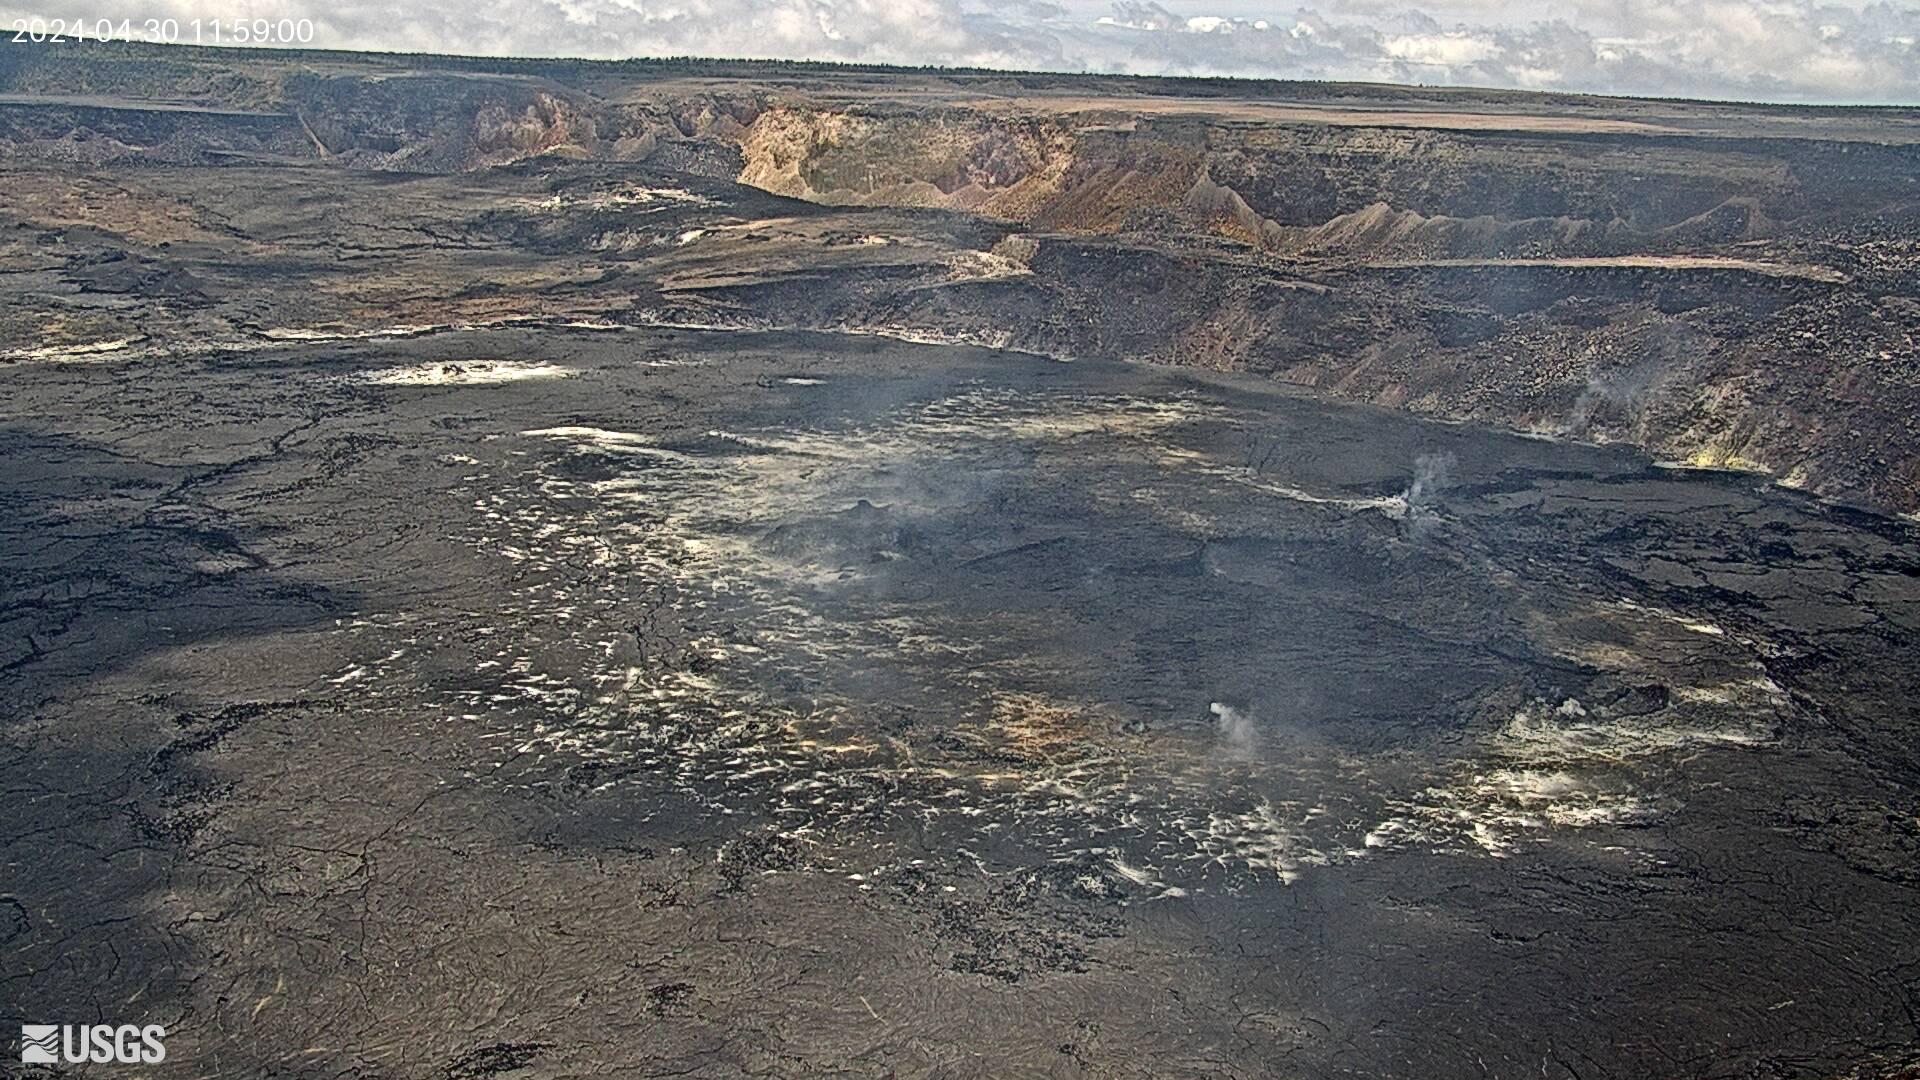 Halemaʻumaʻu vent and lava lake